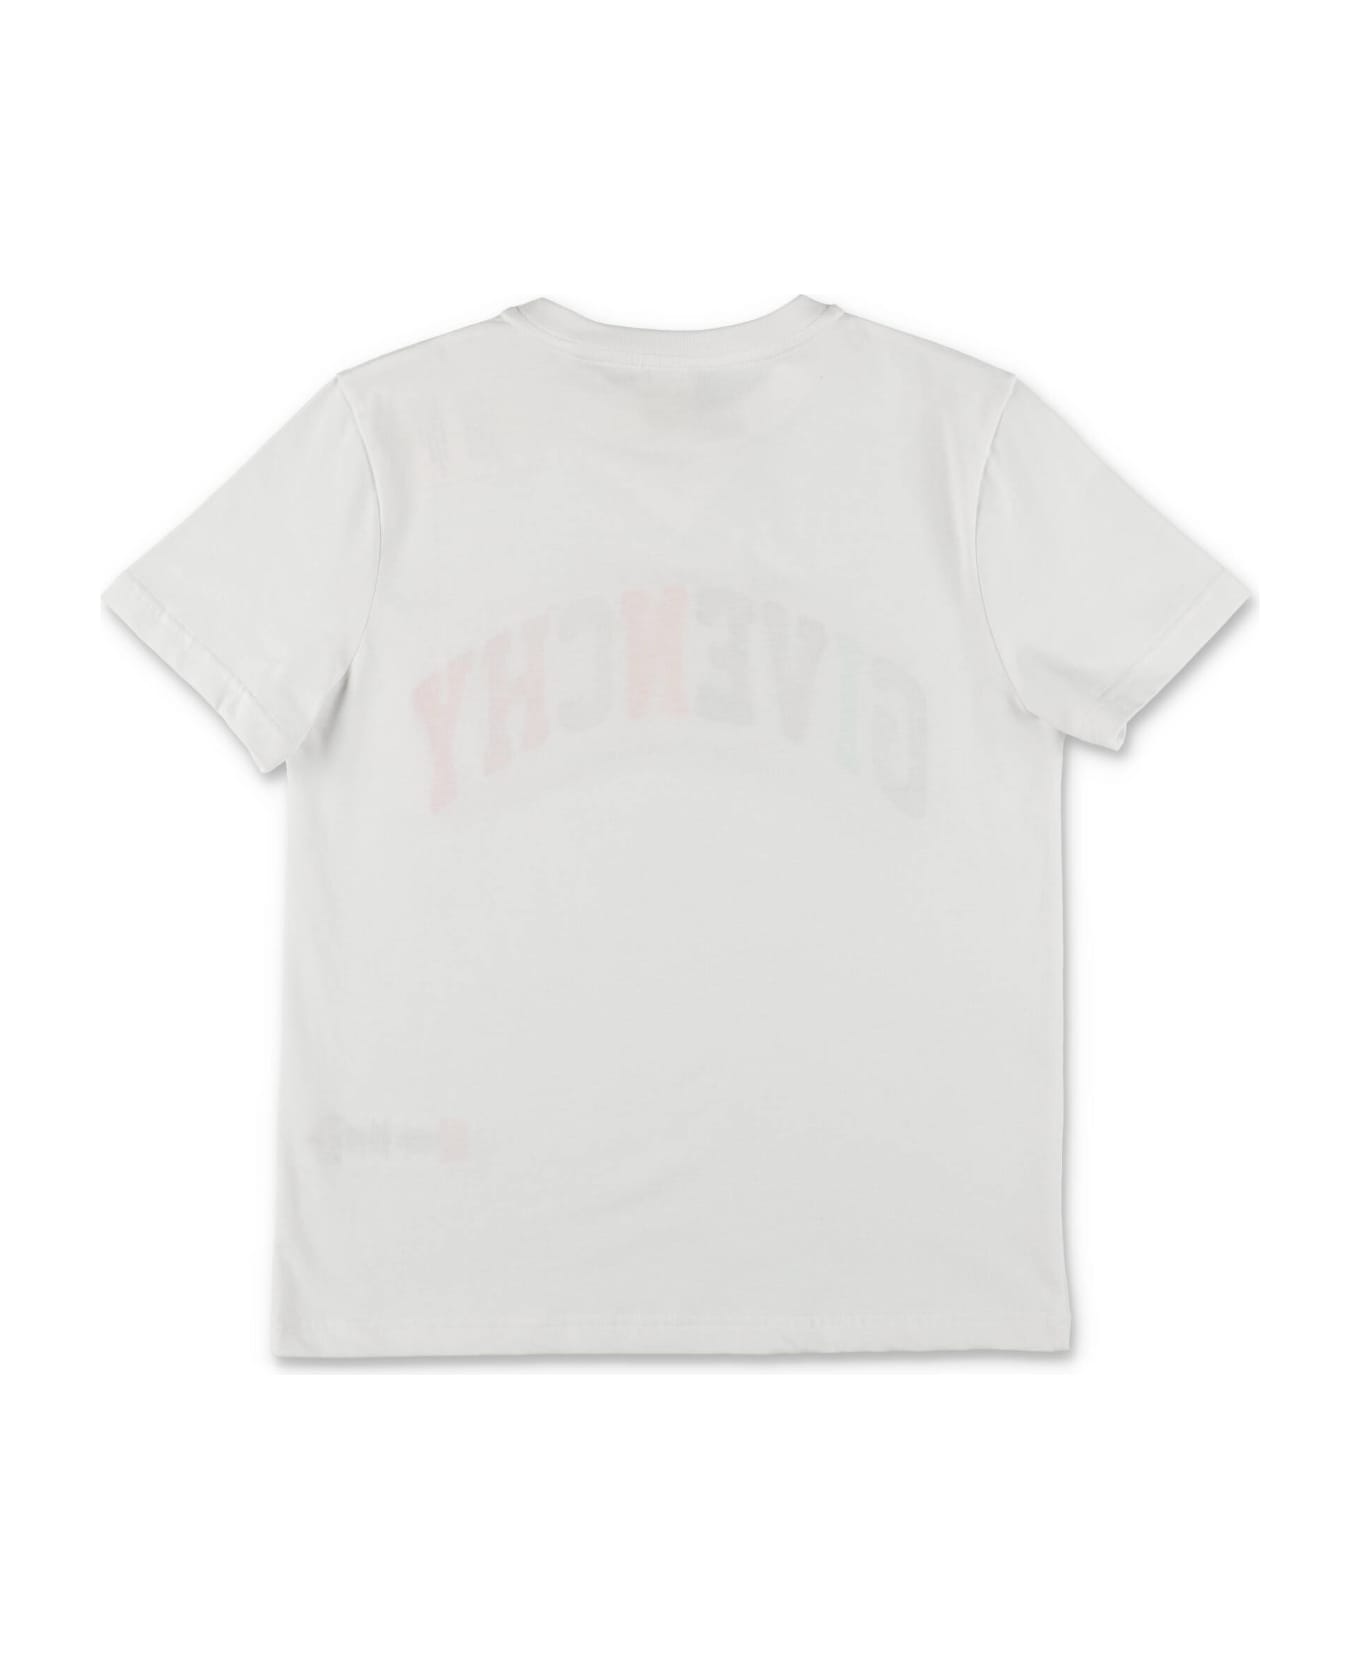 Givenchy T-shirt Bianca In Jersey Di Cotone Bambino - Bianco Tシャツ＆ポロシャツ